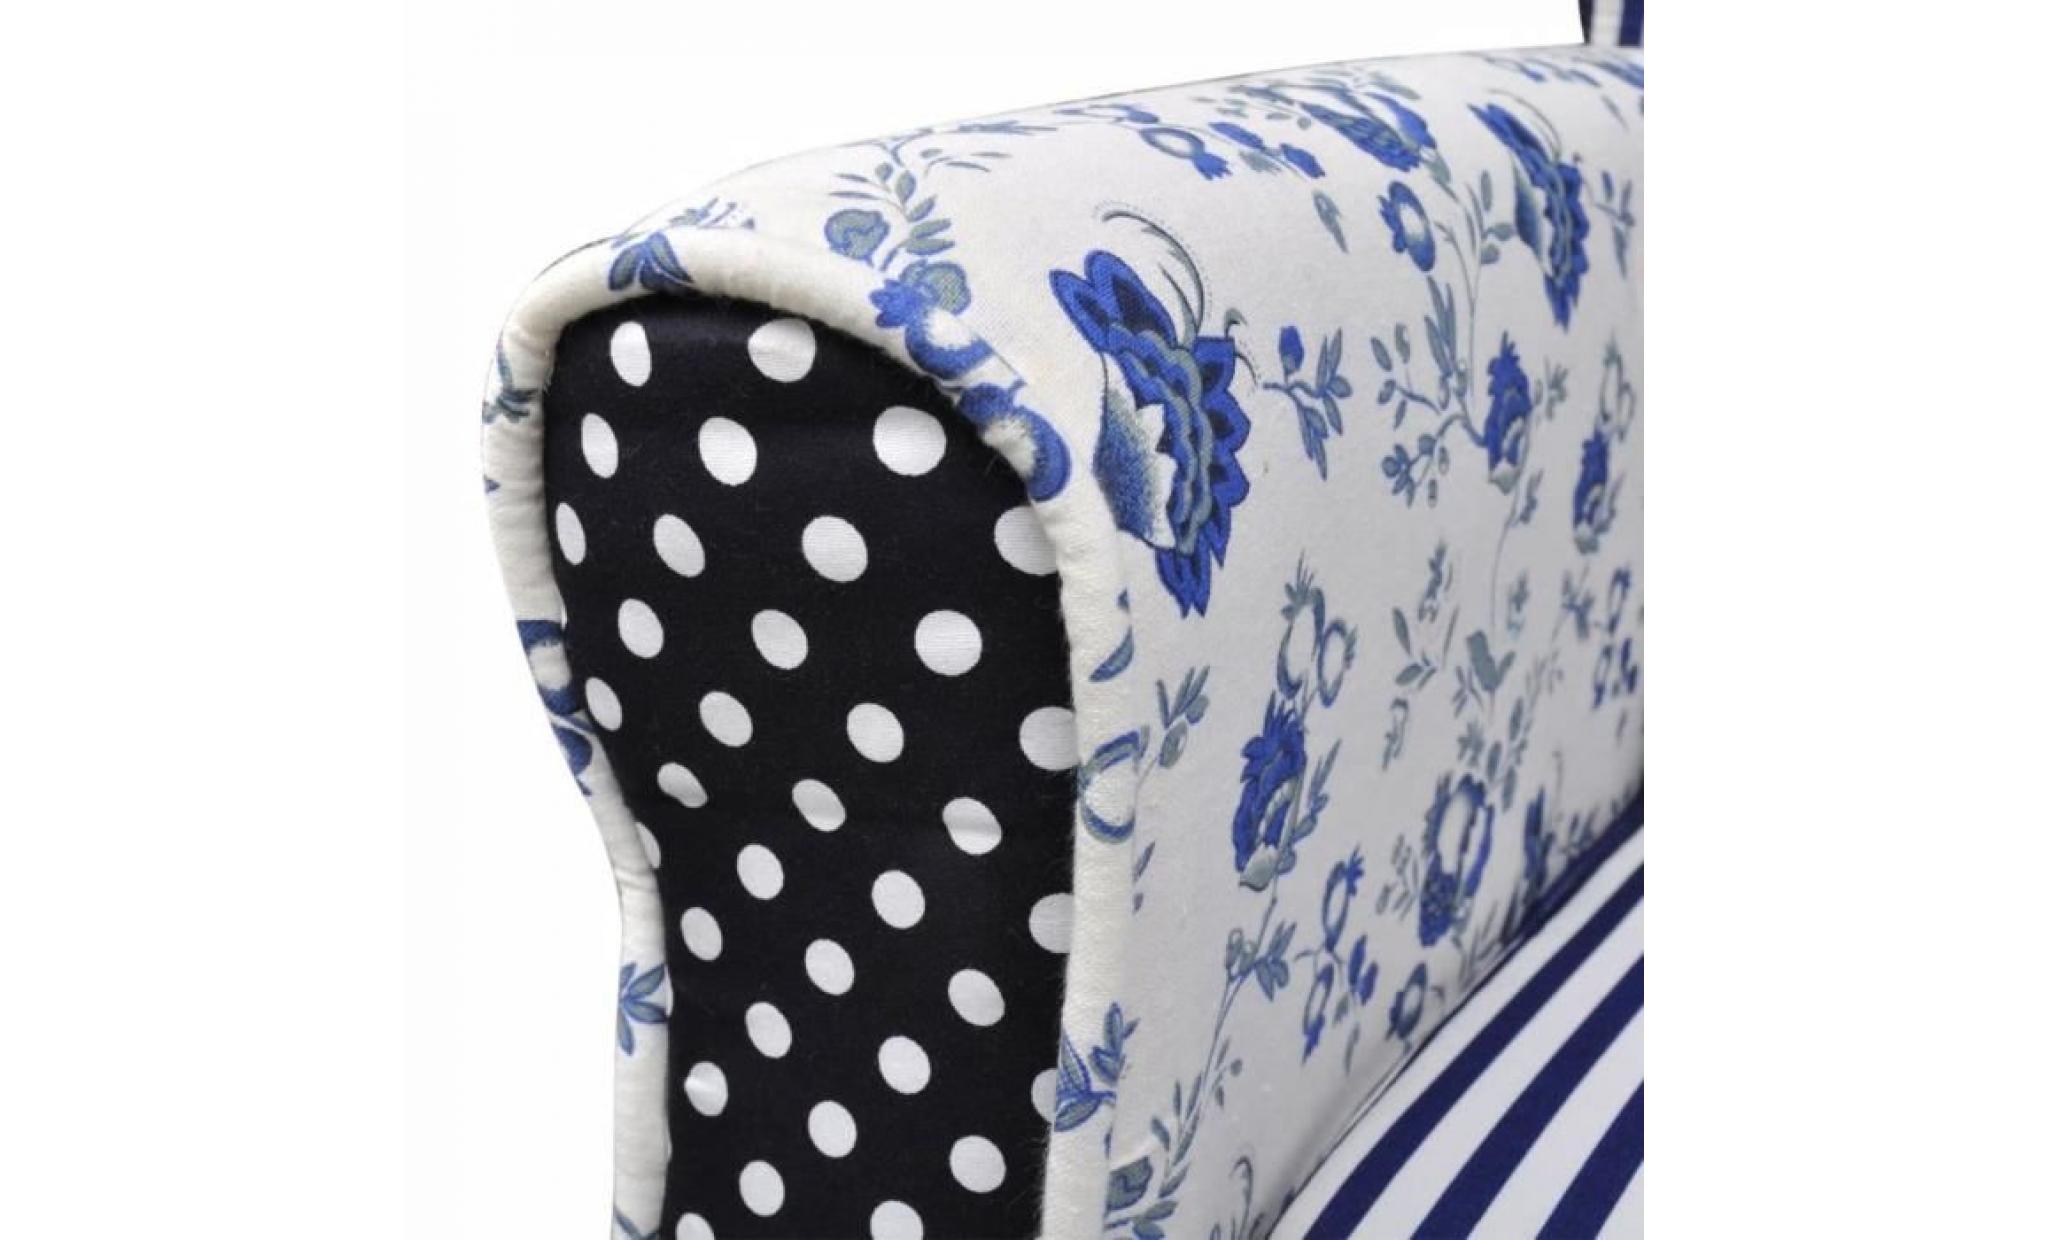 fauteuil avec design de patchwork tissu fauteuil scandinave fauteuil relaxation pas cher